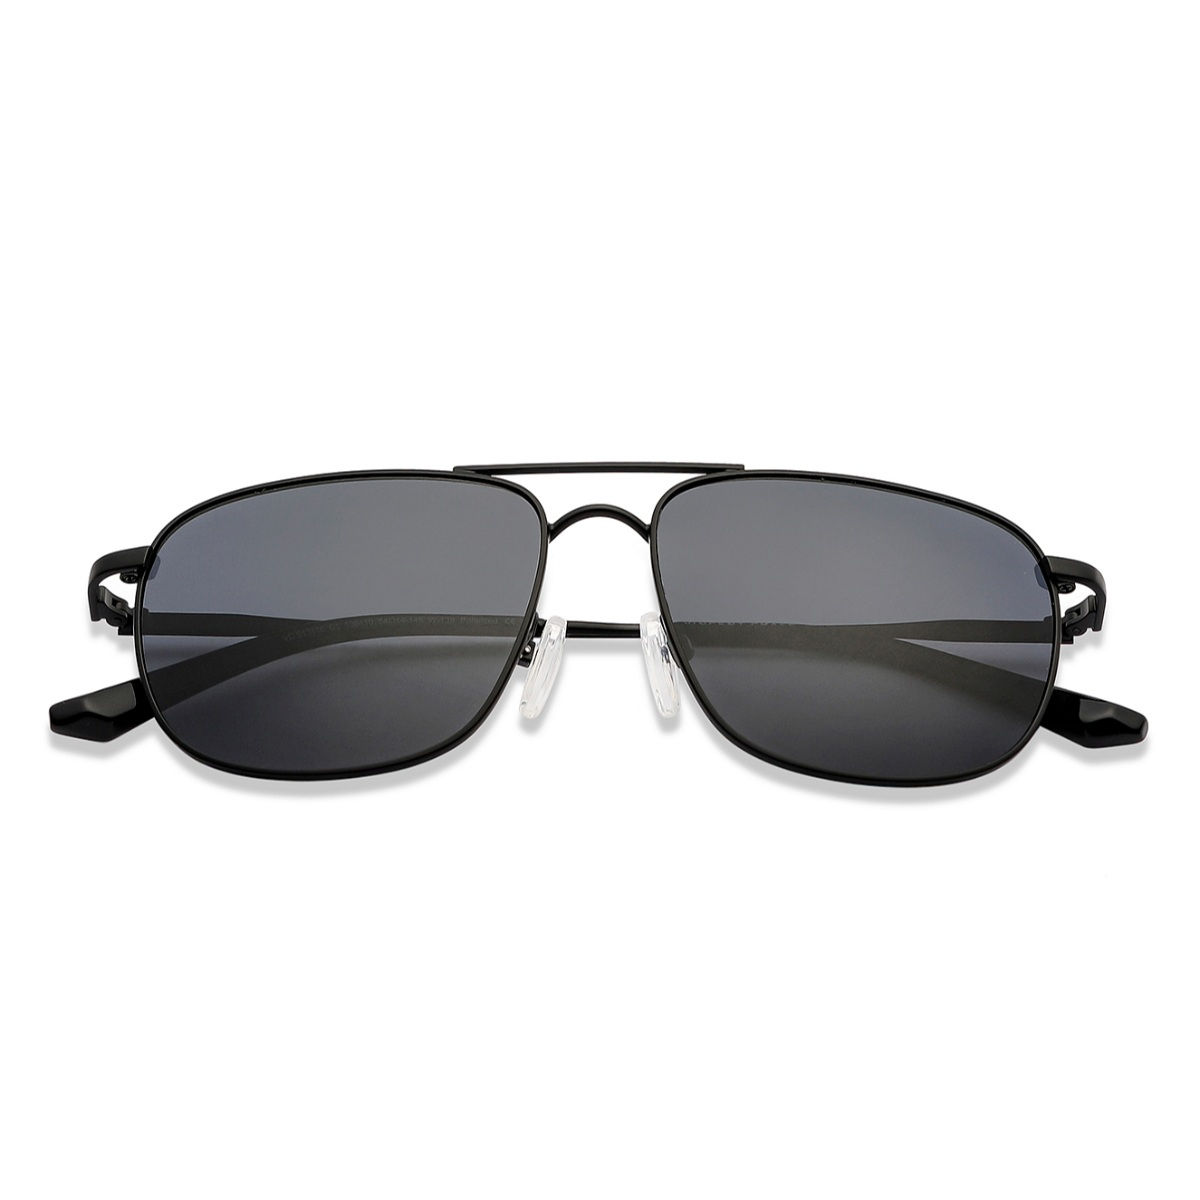 Black Aviator Full Rim Unisex Sunglasses by Vincent Chase Polarized-204226  – Lenskart